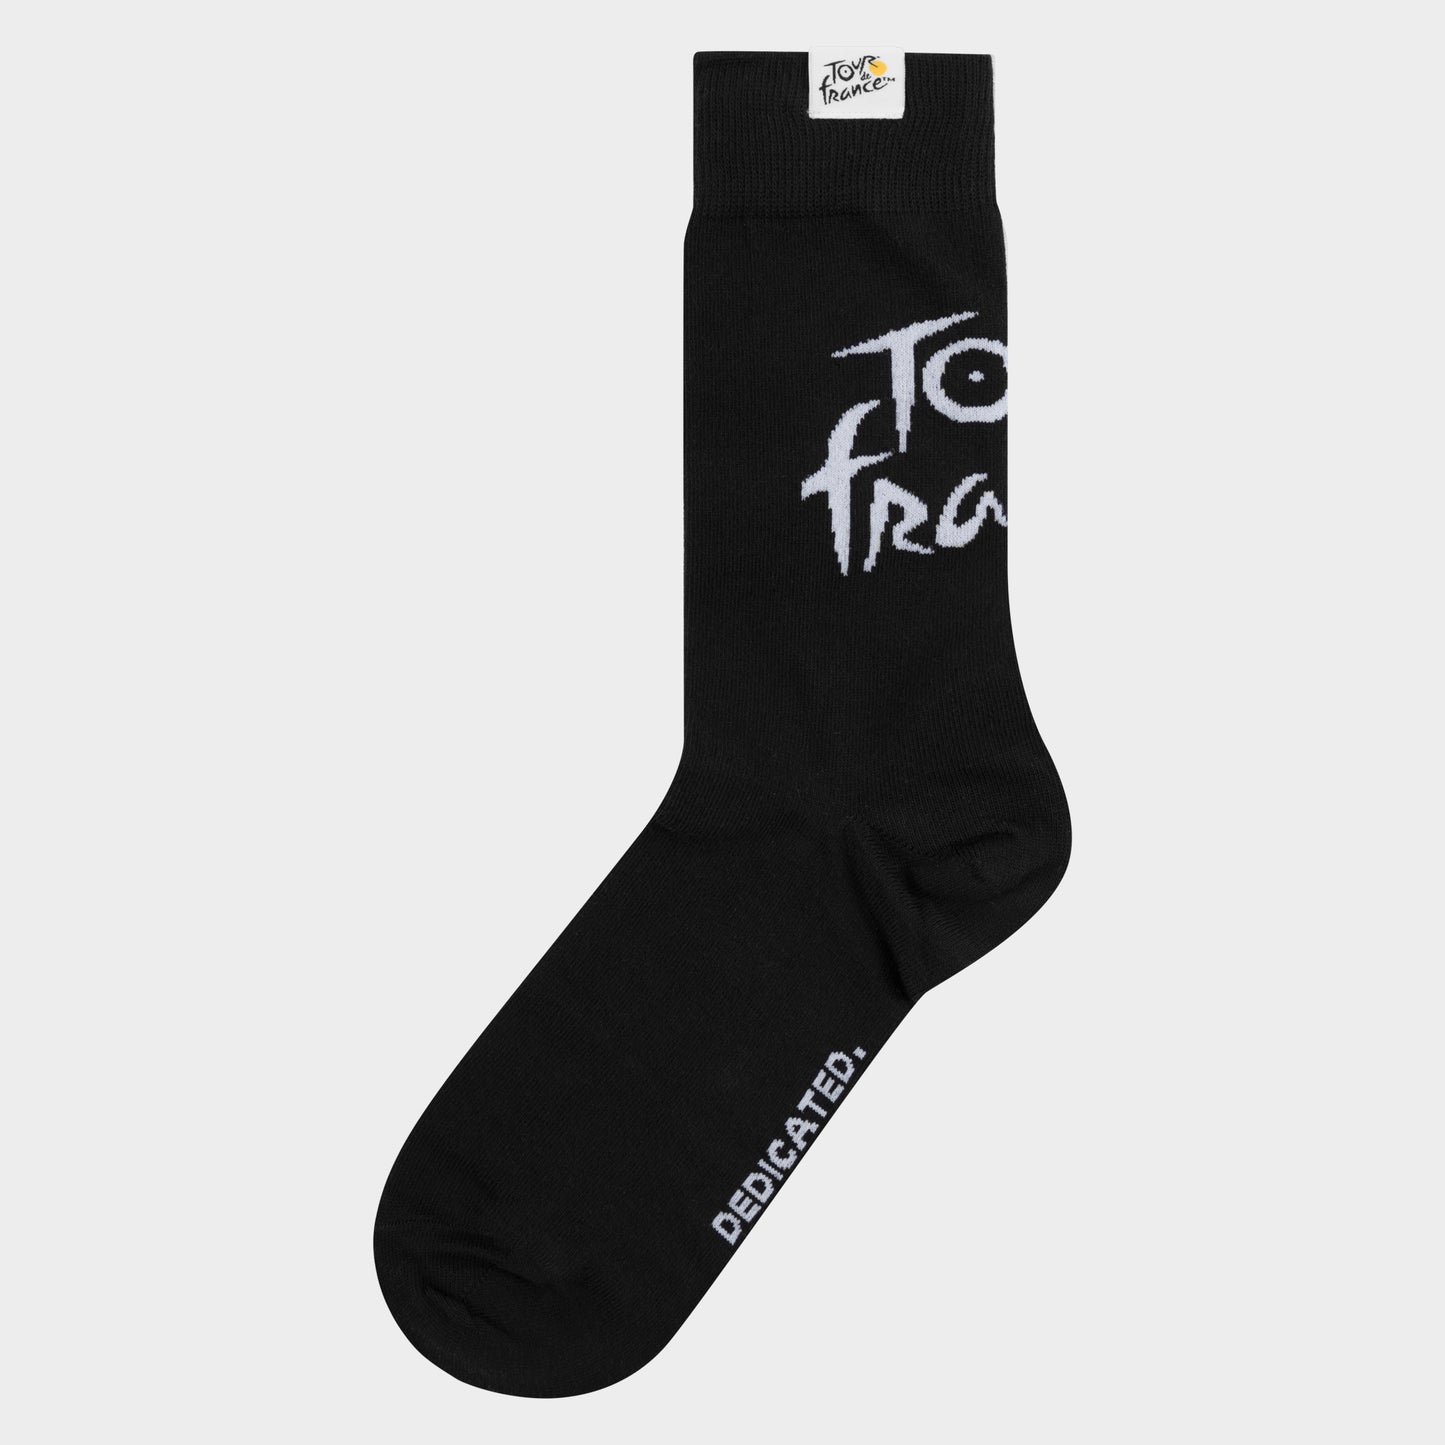 Socks Sigtuna Tour de France Black